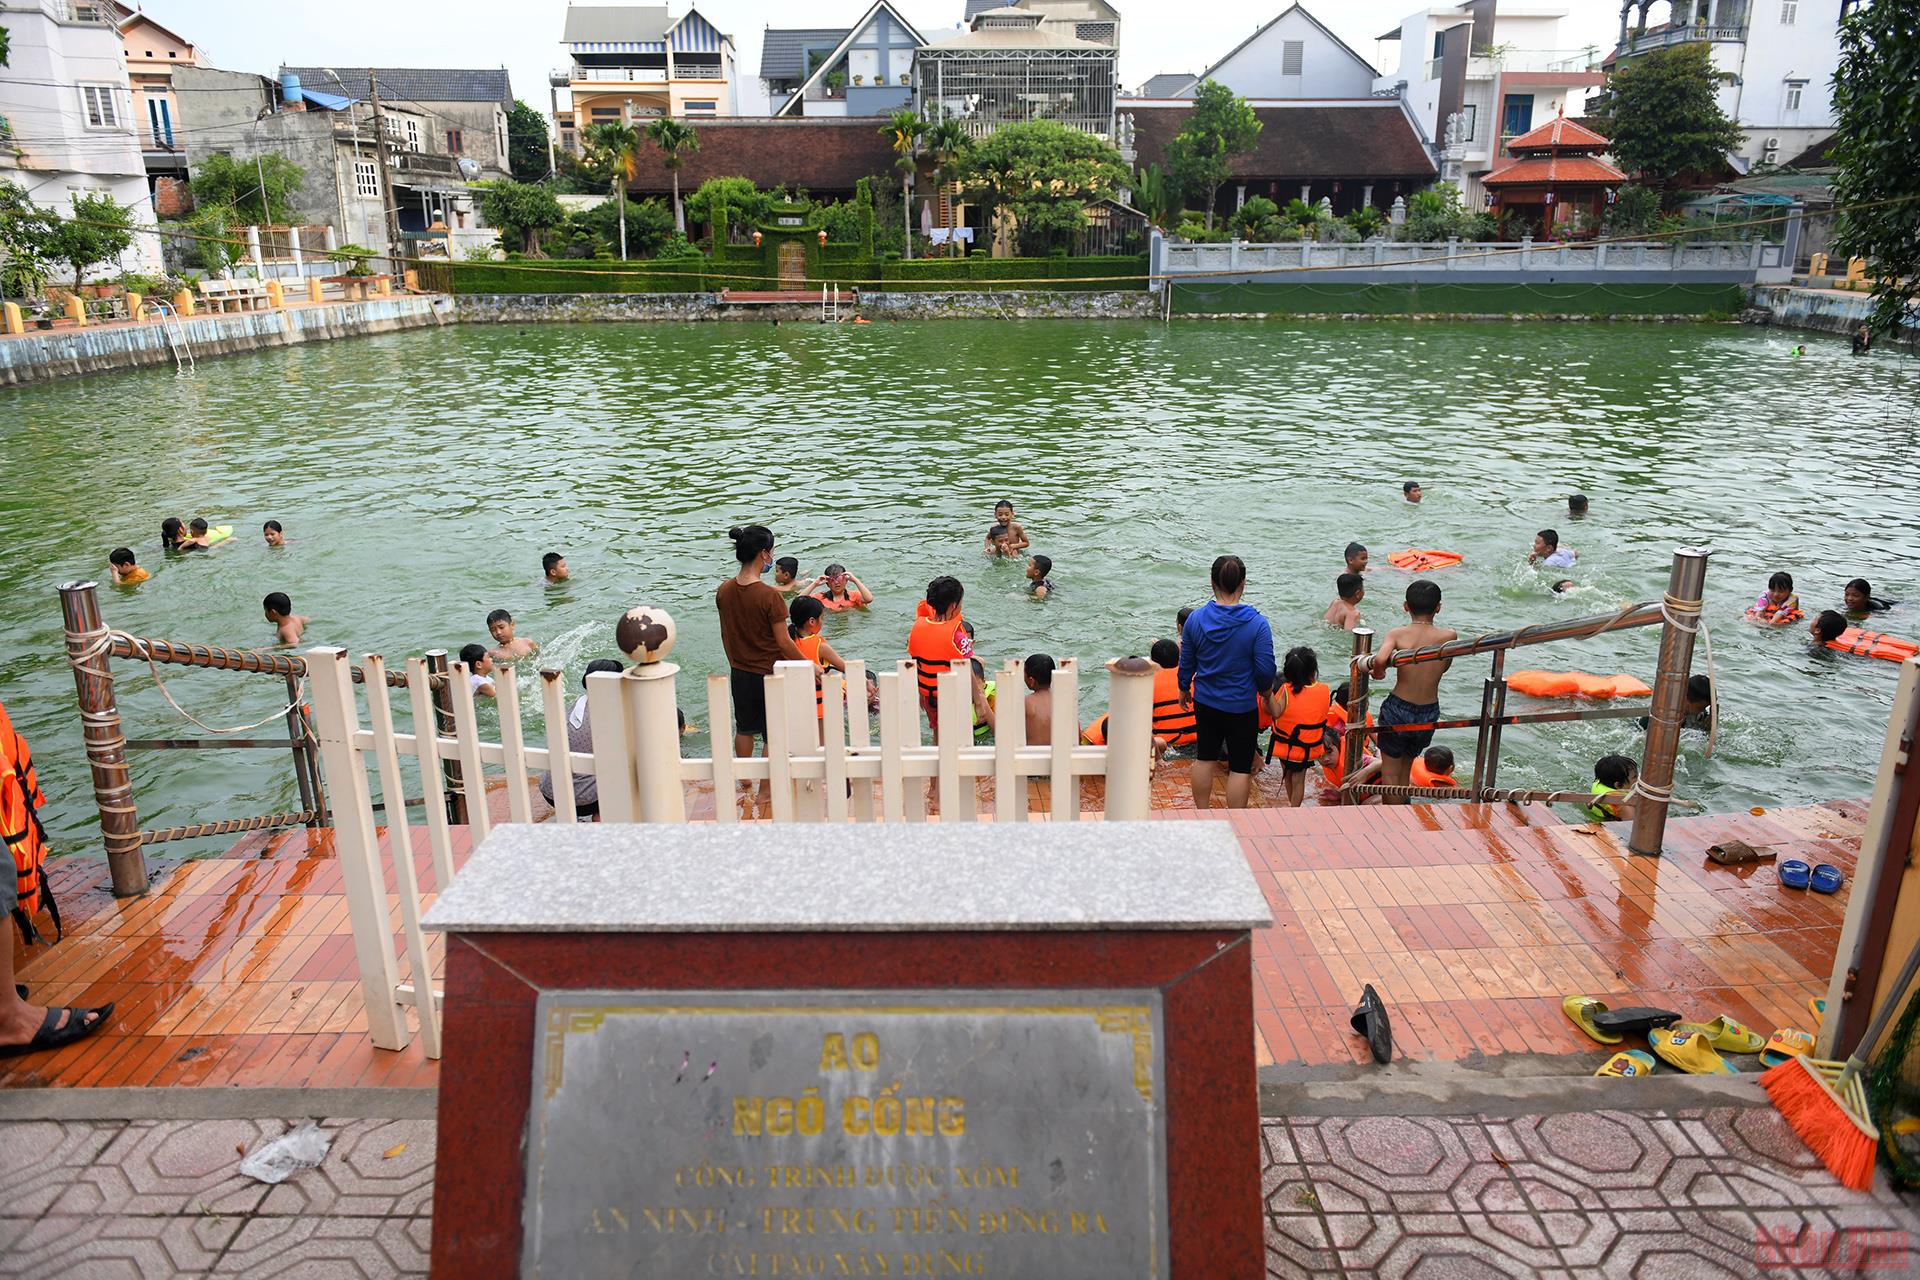 Hồ bơi Yết Kiêu tại An Giang sẽ khiến bạn thích thú với không gian rộng rãi, nước trong xanh và cảnh quan đẹp mắt. Trải nghiệm những giây phút thư giãn cùng gia đình hoặc bạn bè tại đây chắc chắn sẽ là một kỷ niệm đáng nhớ.